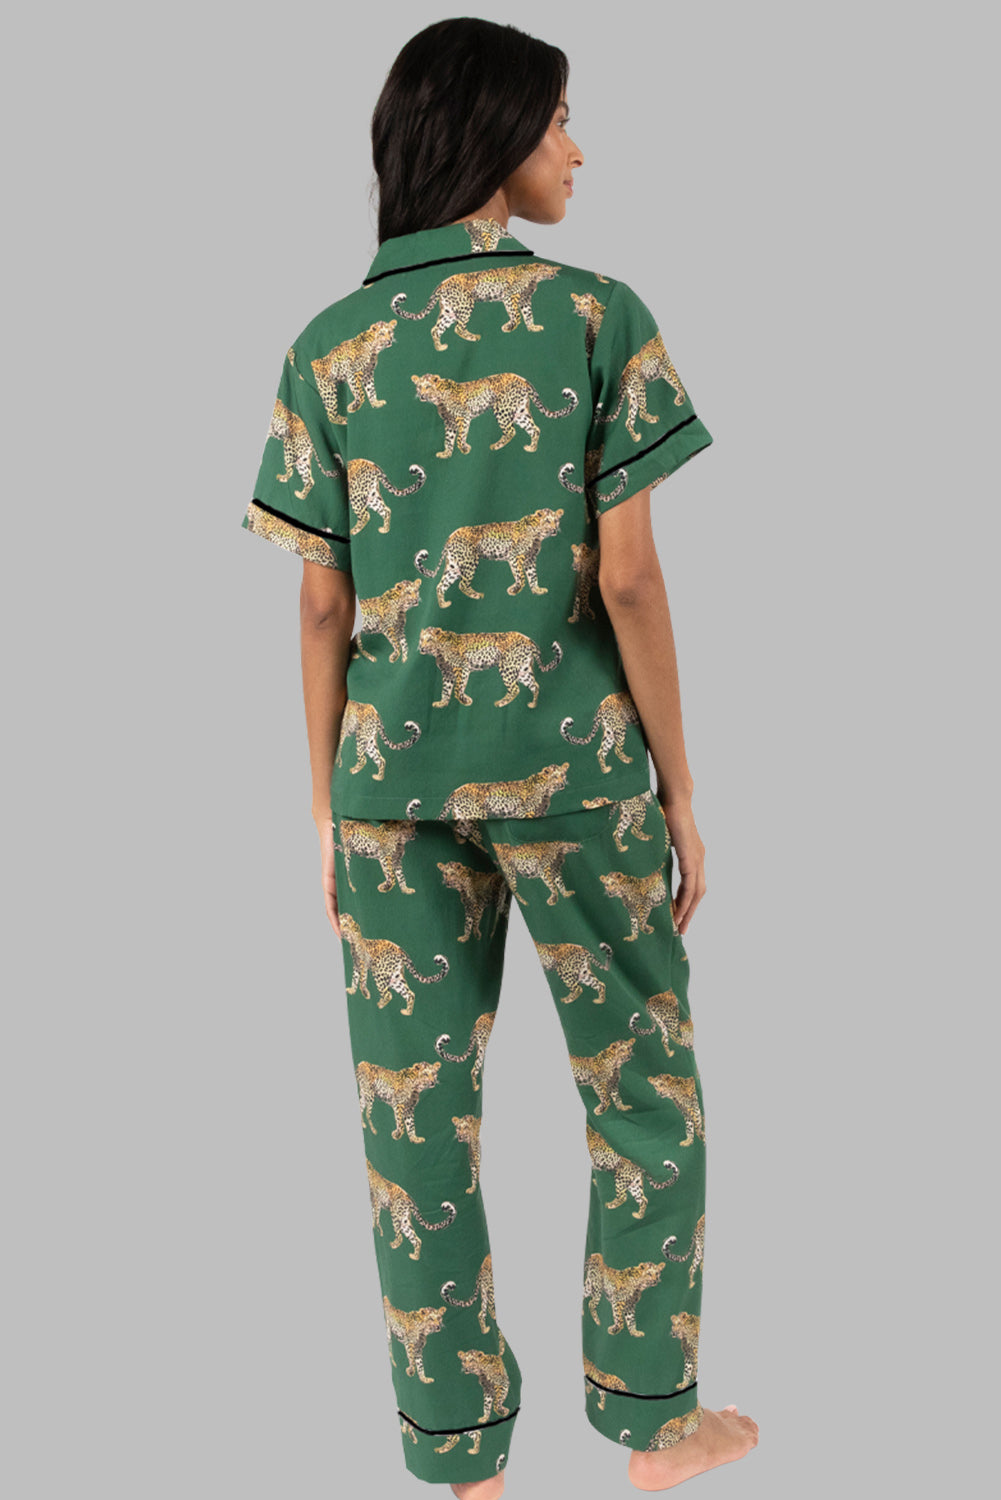 Grünes Pyjama-Set mit kurzärmligem Hemd und Hose mit Gepardenmuster